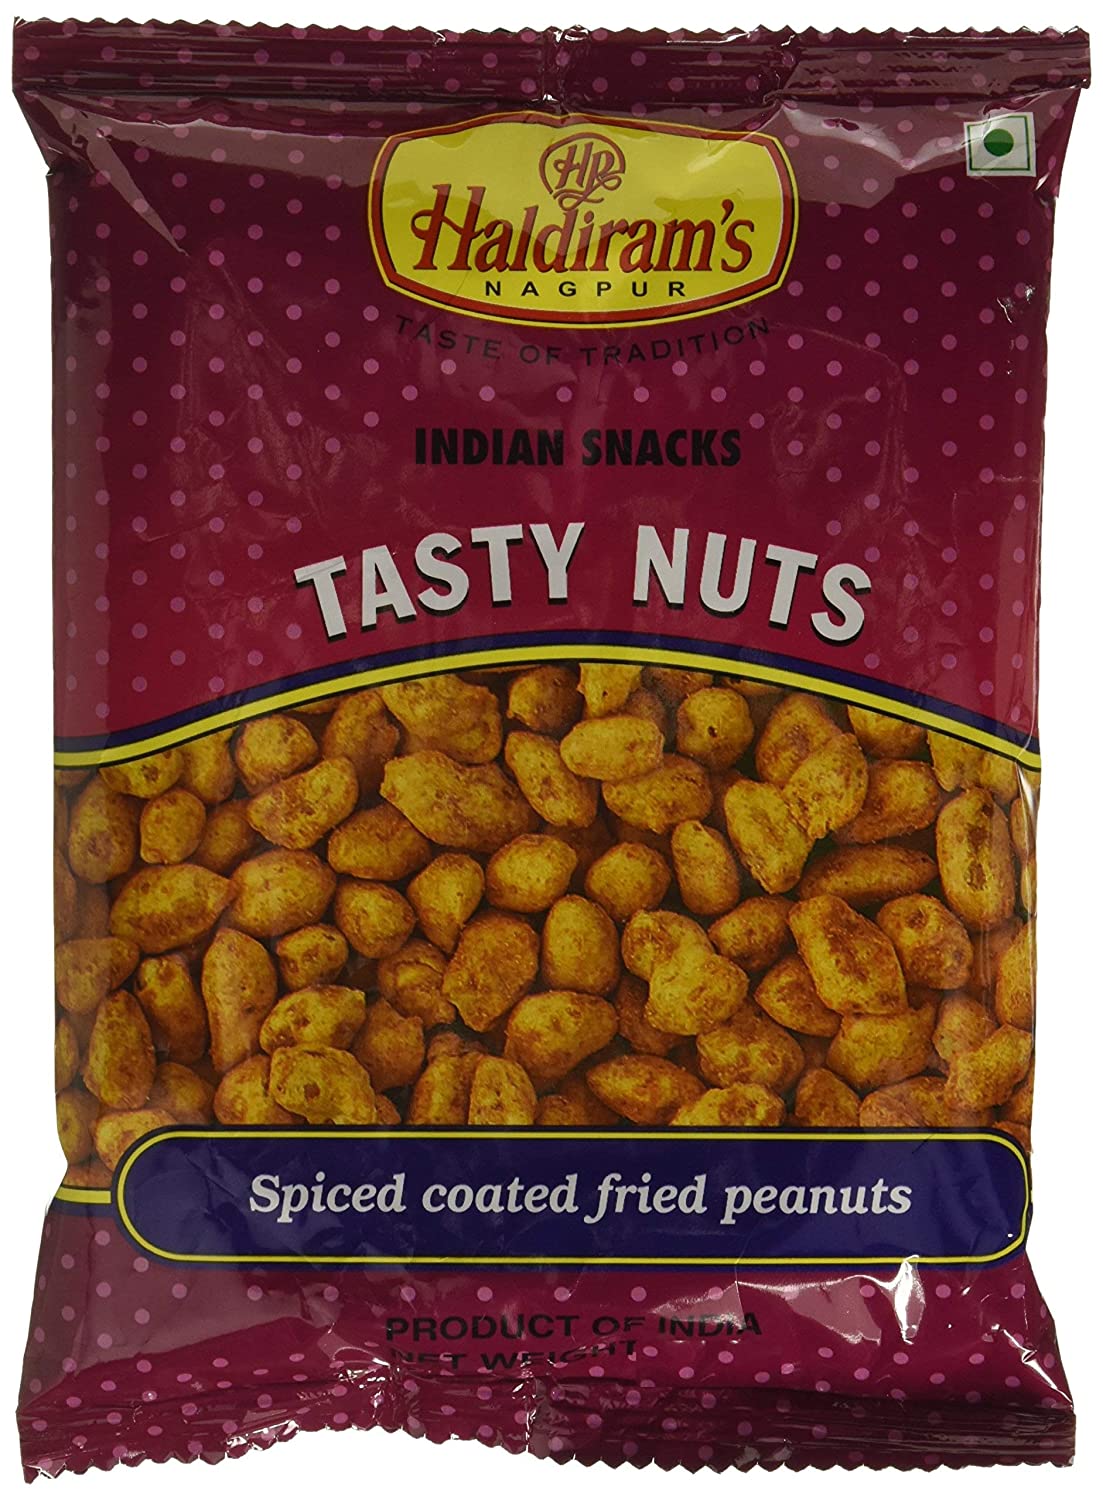 Haldiram's Nagpur Tasty Nuts Image